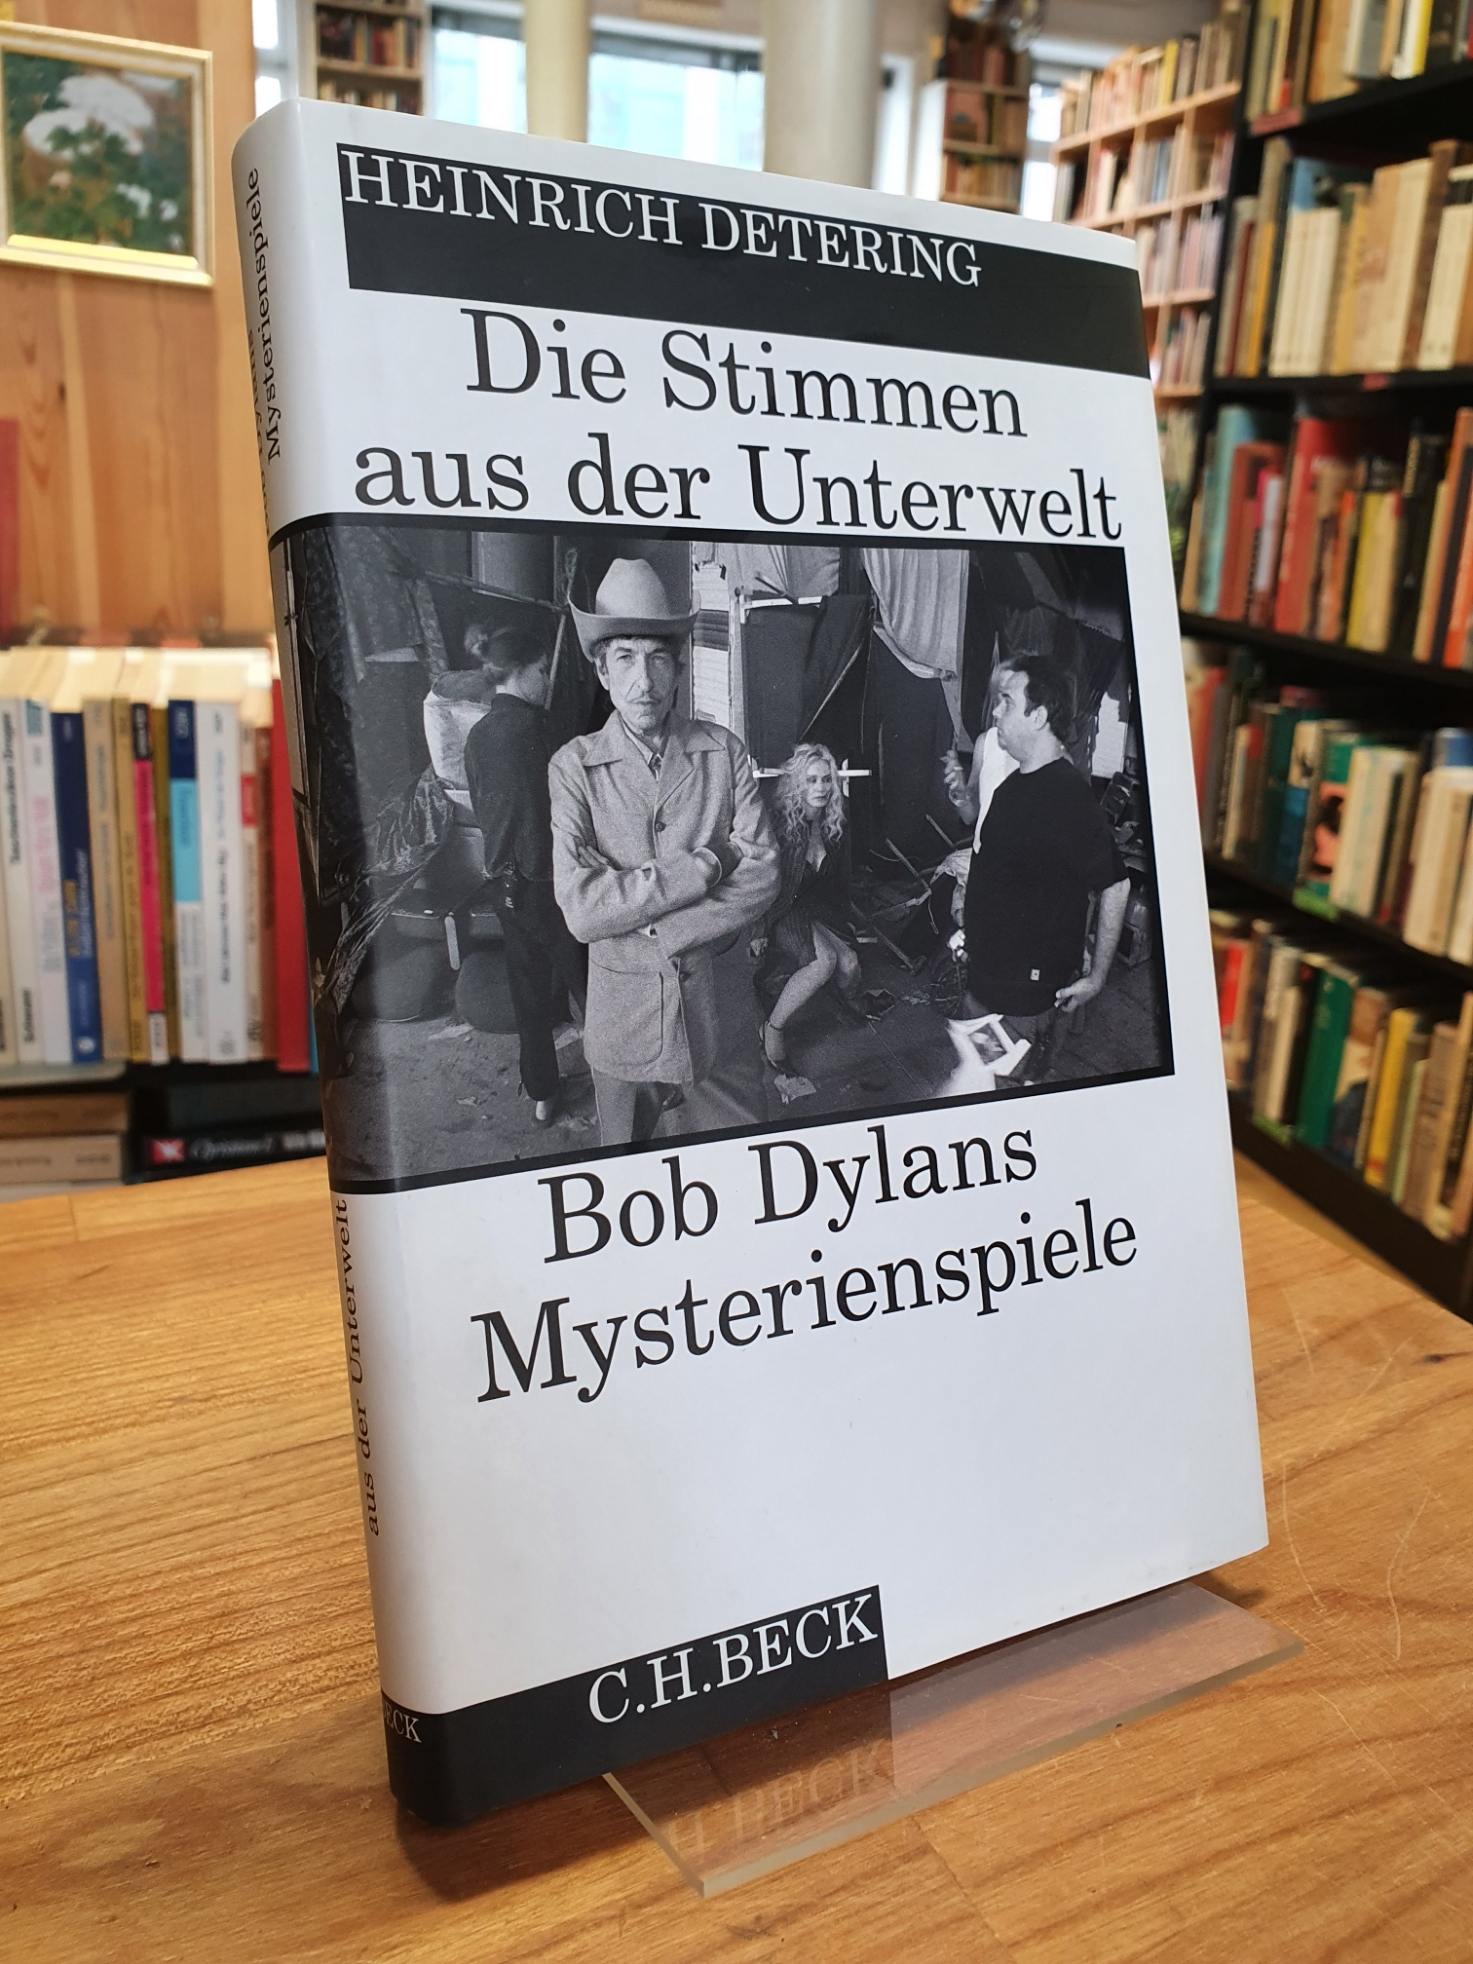 Detering, Die Stimmen aus der Unterwelt – Bob Dylans Mysterienspiele,